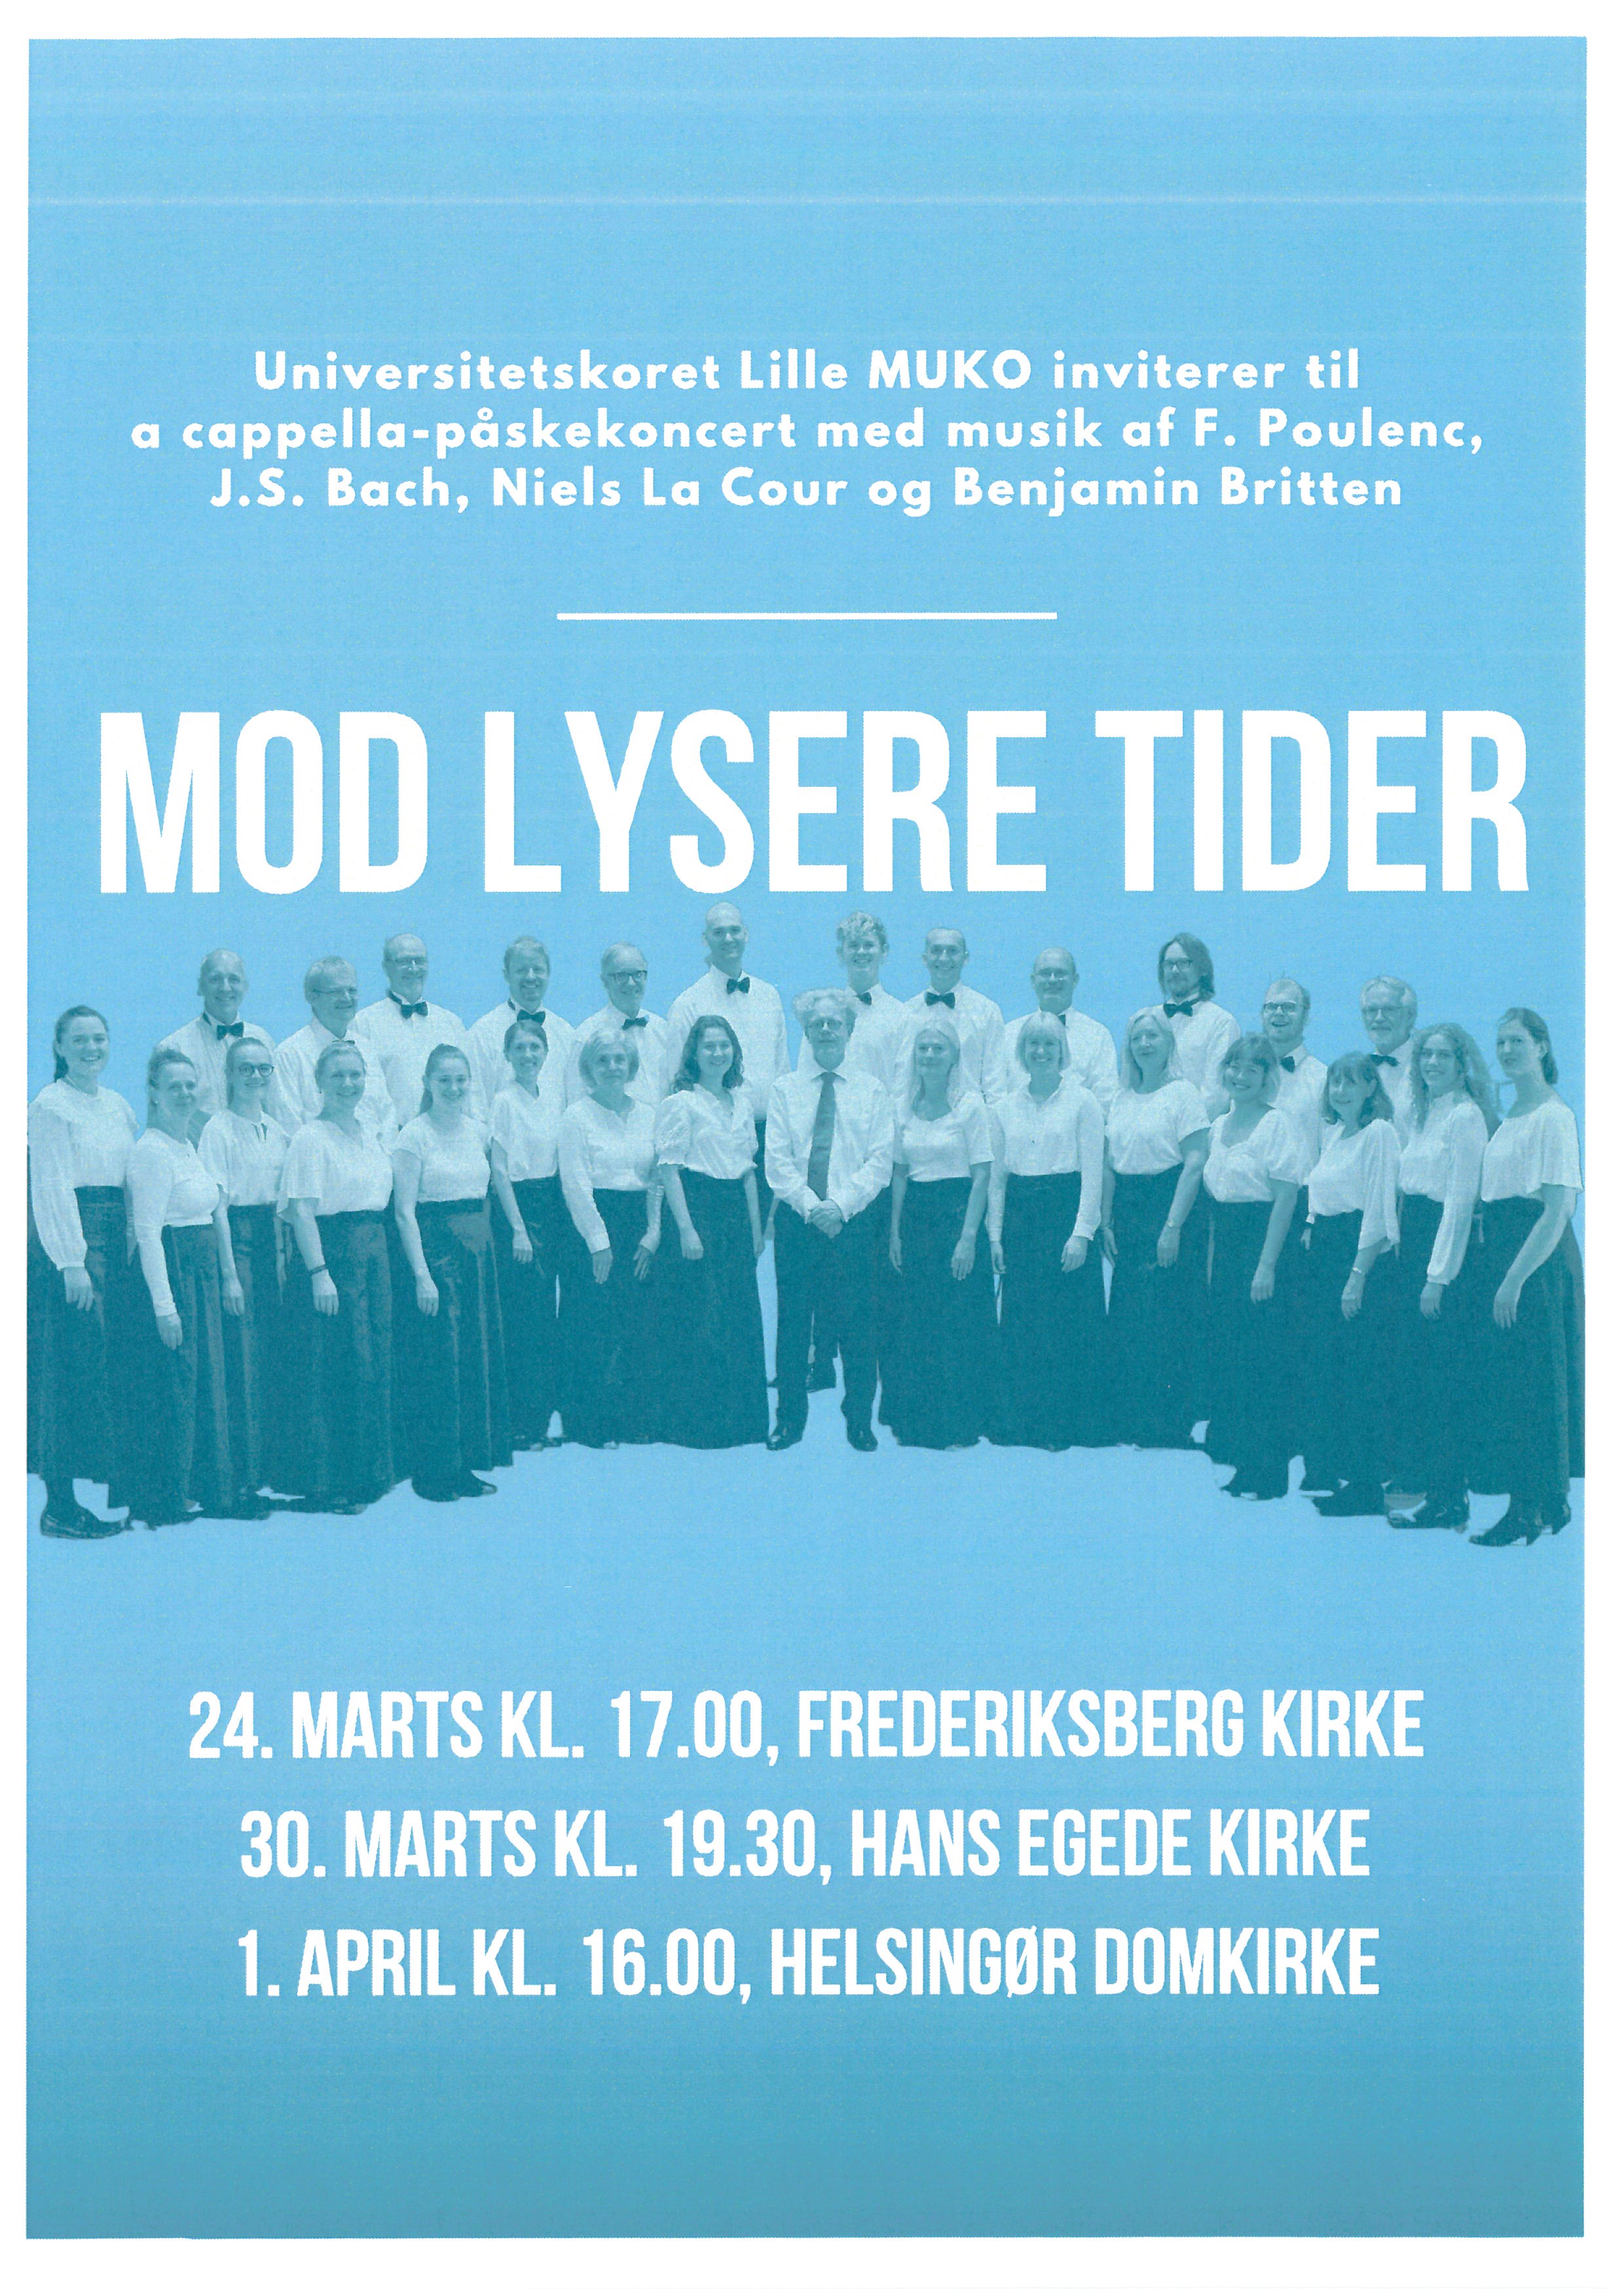 Mod lysere tider - Universitetskoret Lille MUKO - Klassisk kor i København